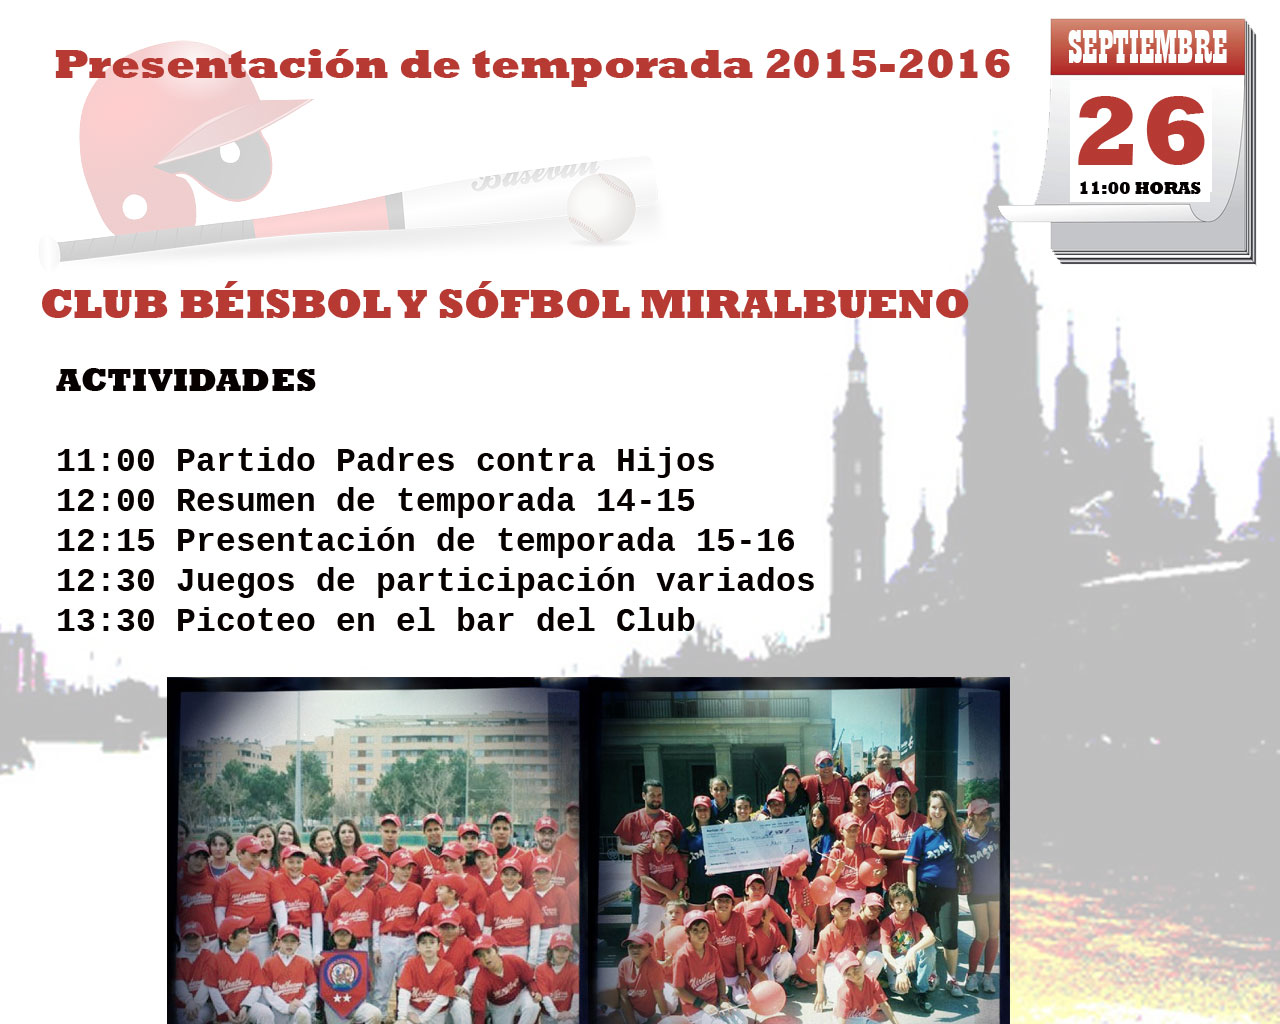 http://www.beisbolmiralbueno.es/wp-content/uploads/2015/09/cartelpresentación.jpg